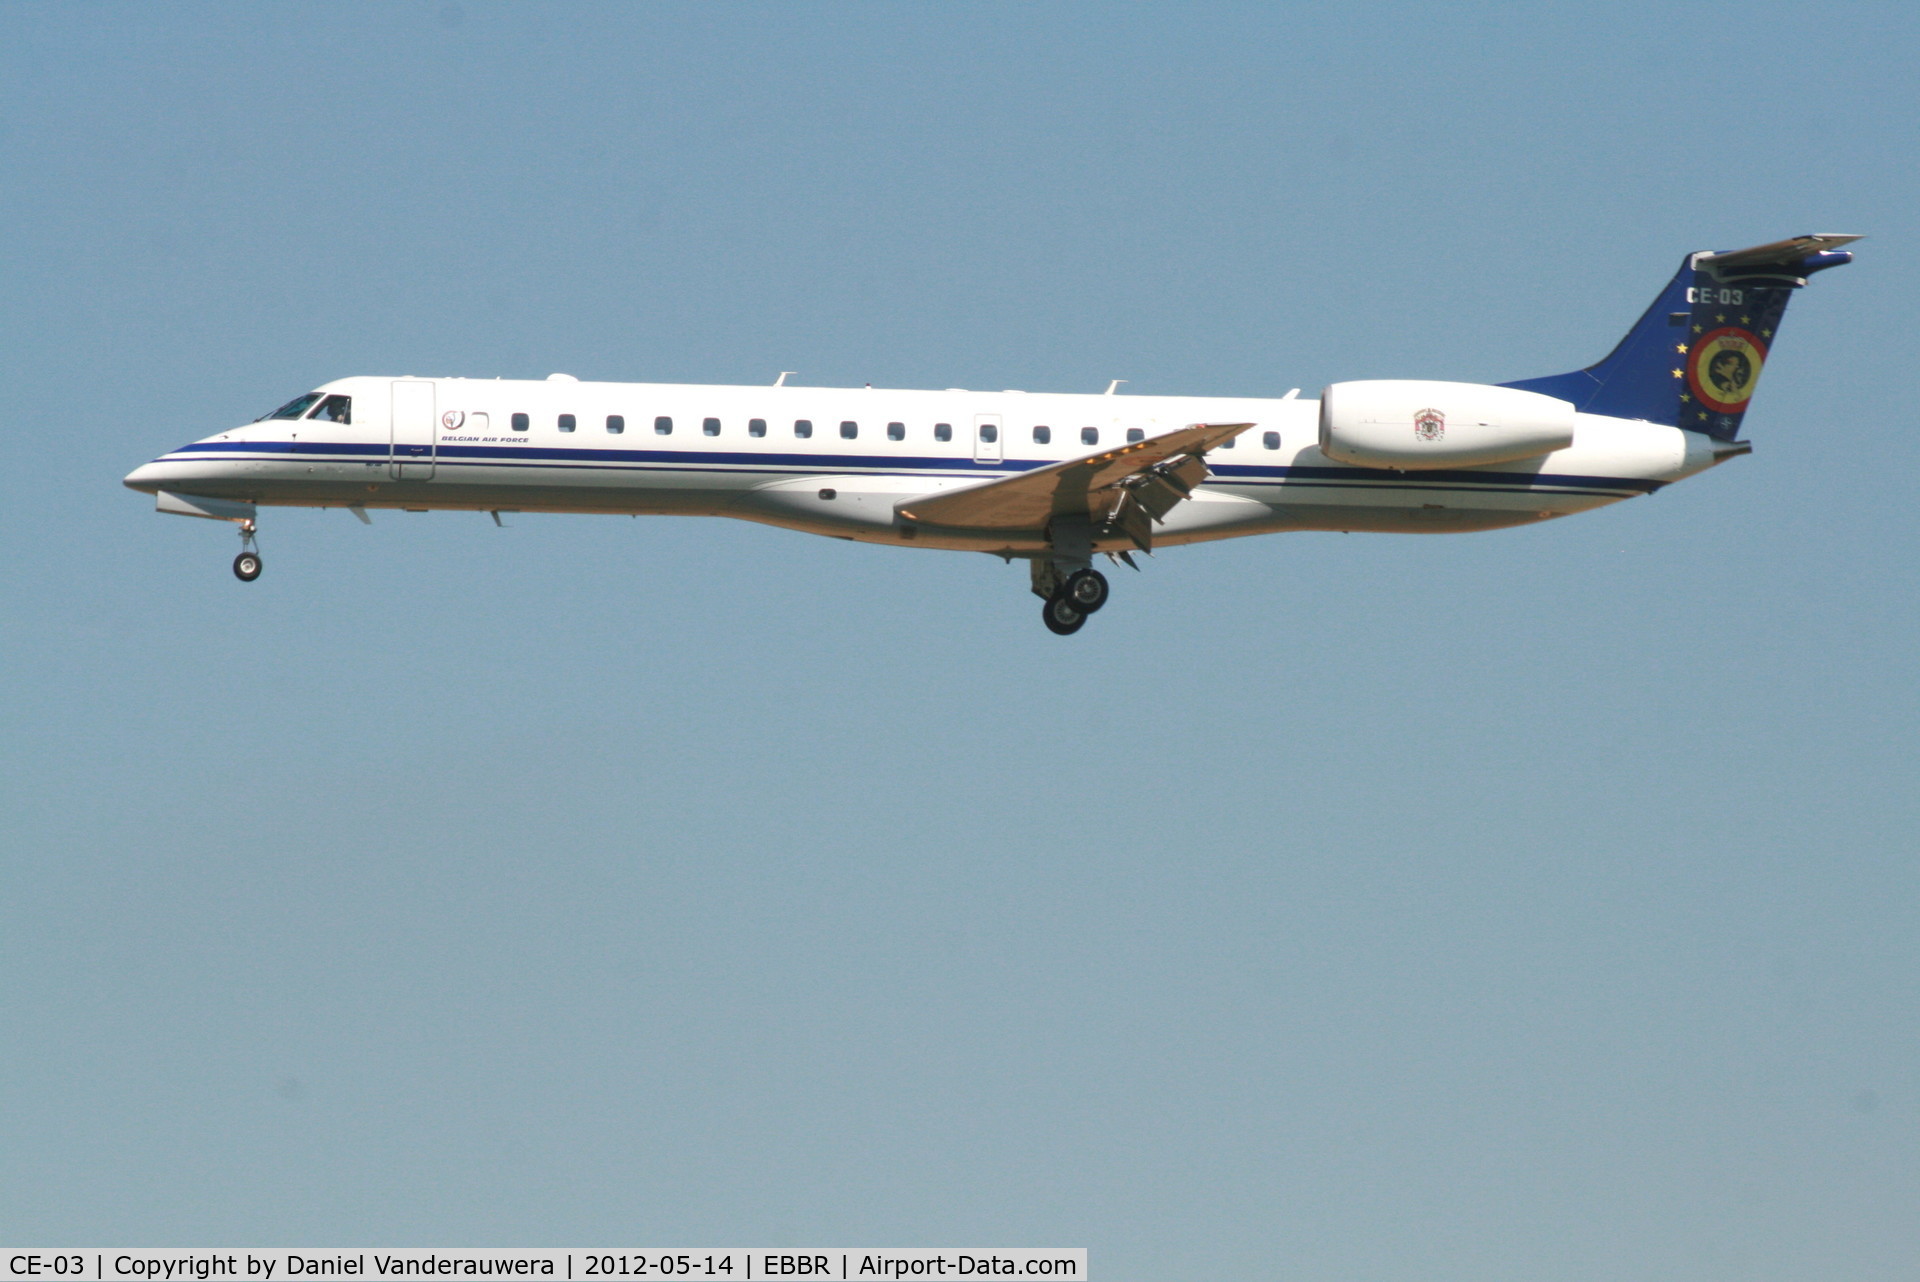 CE-03, 2001 Embraer ERJ-145LR (EMB-145LR) C/N 145526, Descending to RWY 25L